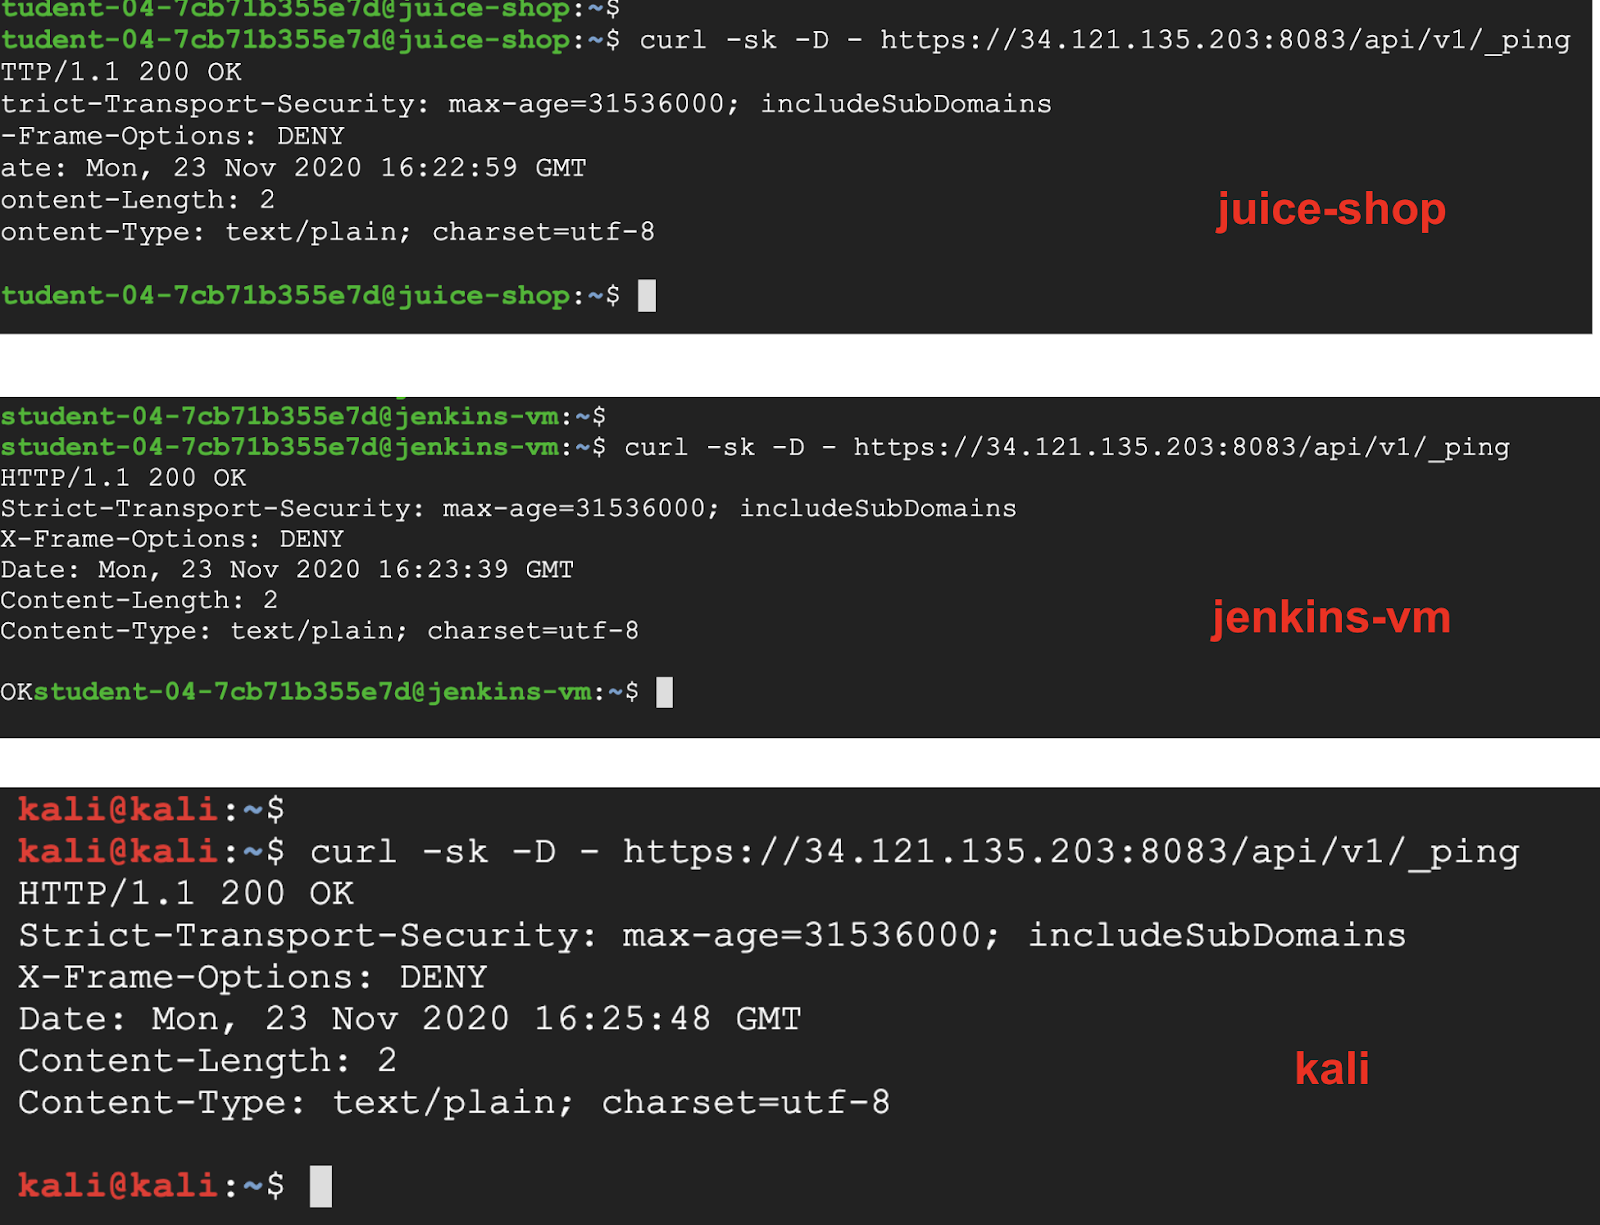 jenkins-vm, juice-shop and kali HTTP response status codes